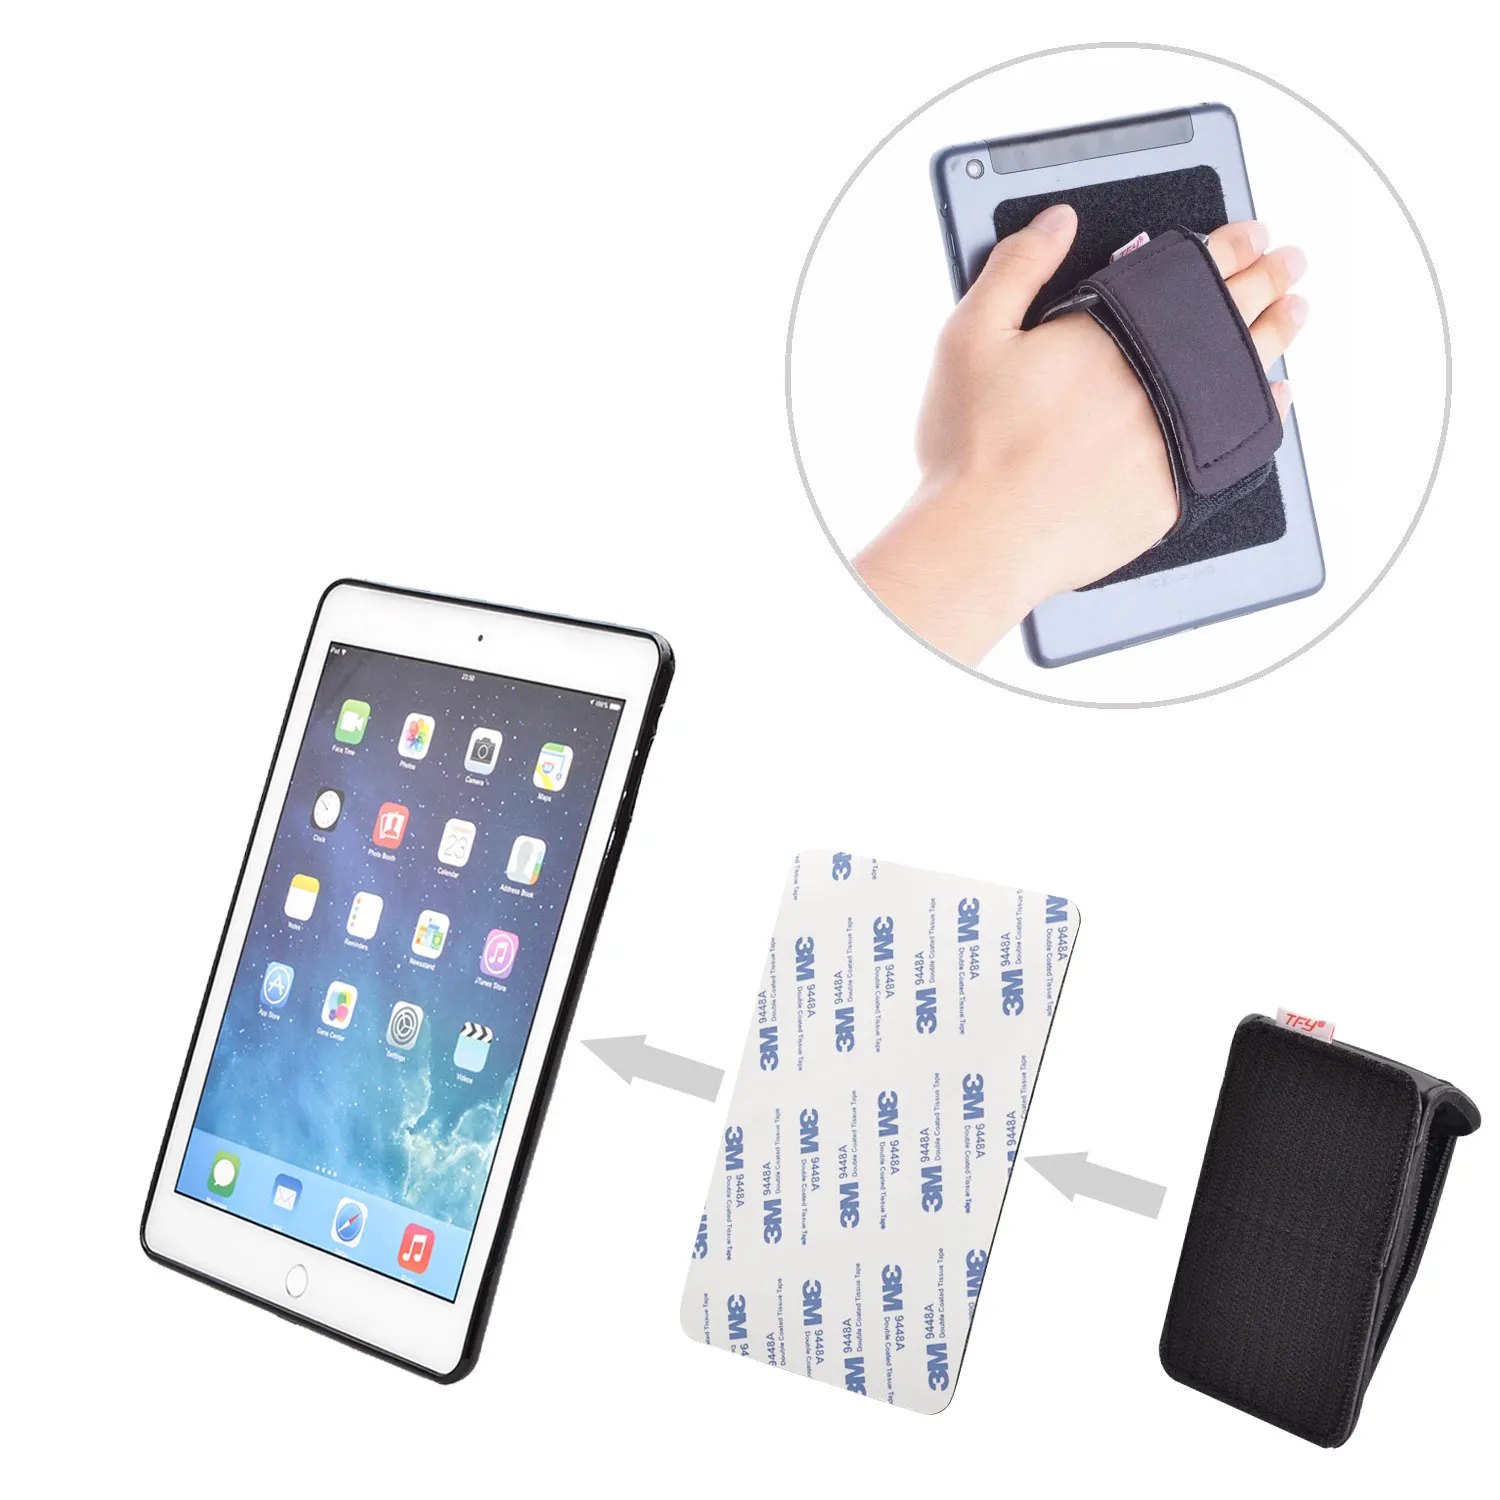 TFY gevoerde handriem plus haaklus bevestiging tape zelfklevende patch - DIY afneembare handriem voor smartphone, tablet pc en meer